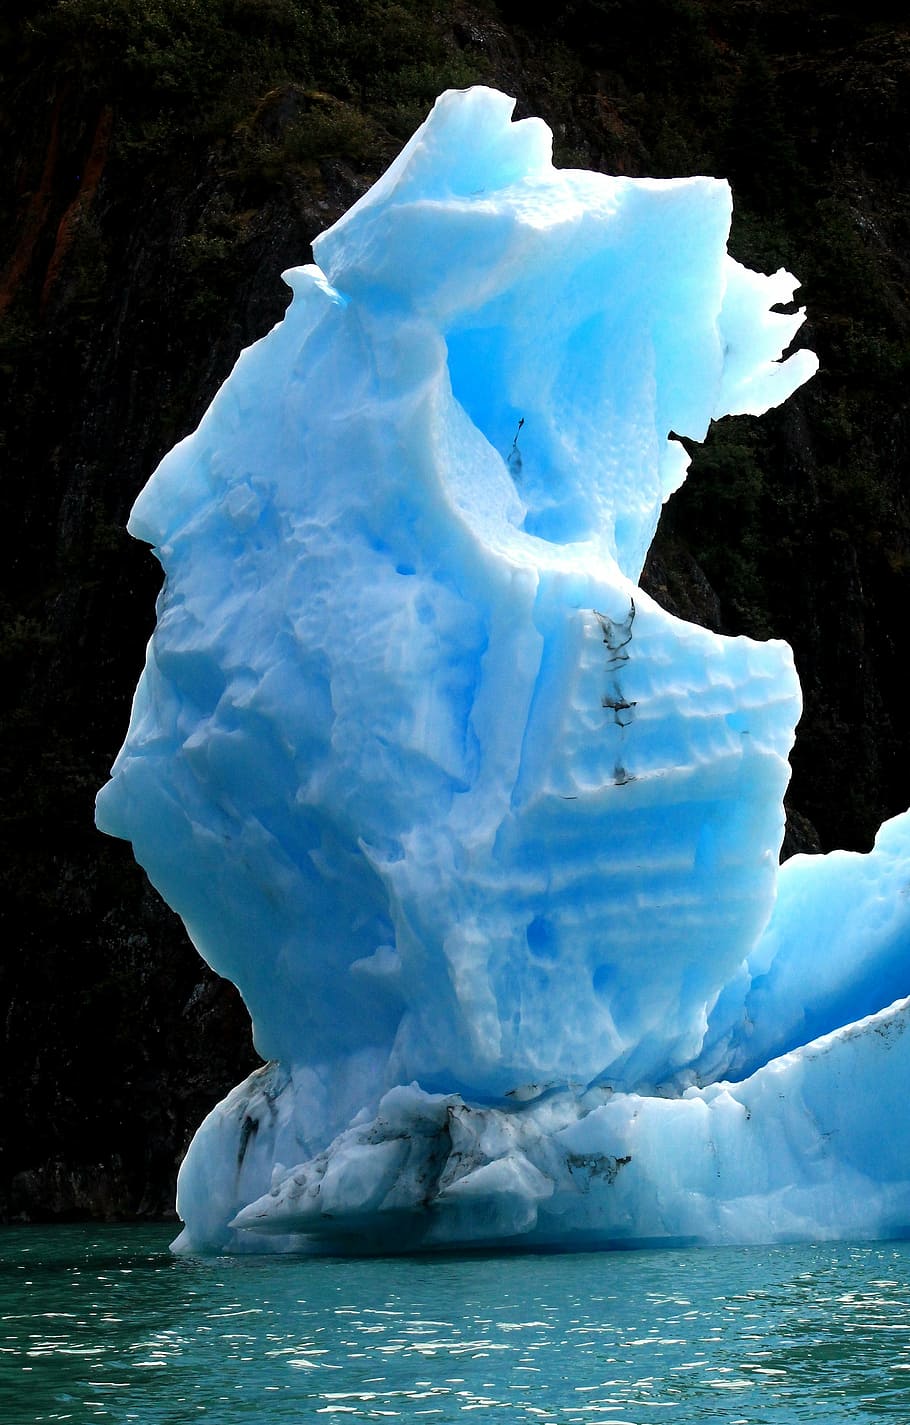 burg de gelo, iceberg, azul, fiorde, congelado, flutuante, glacial, gelo, água, natureza